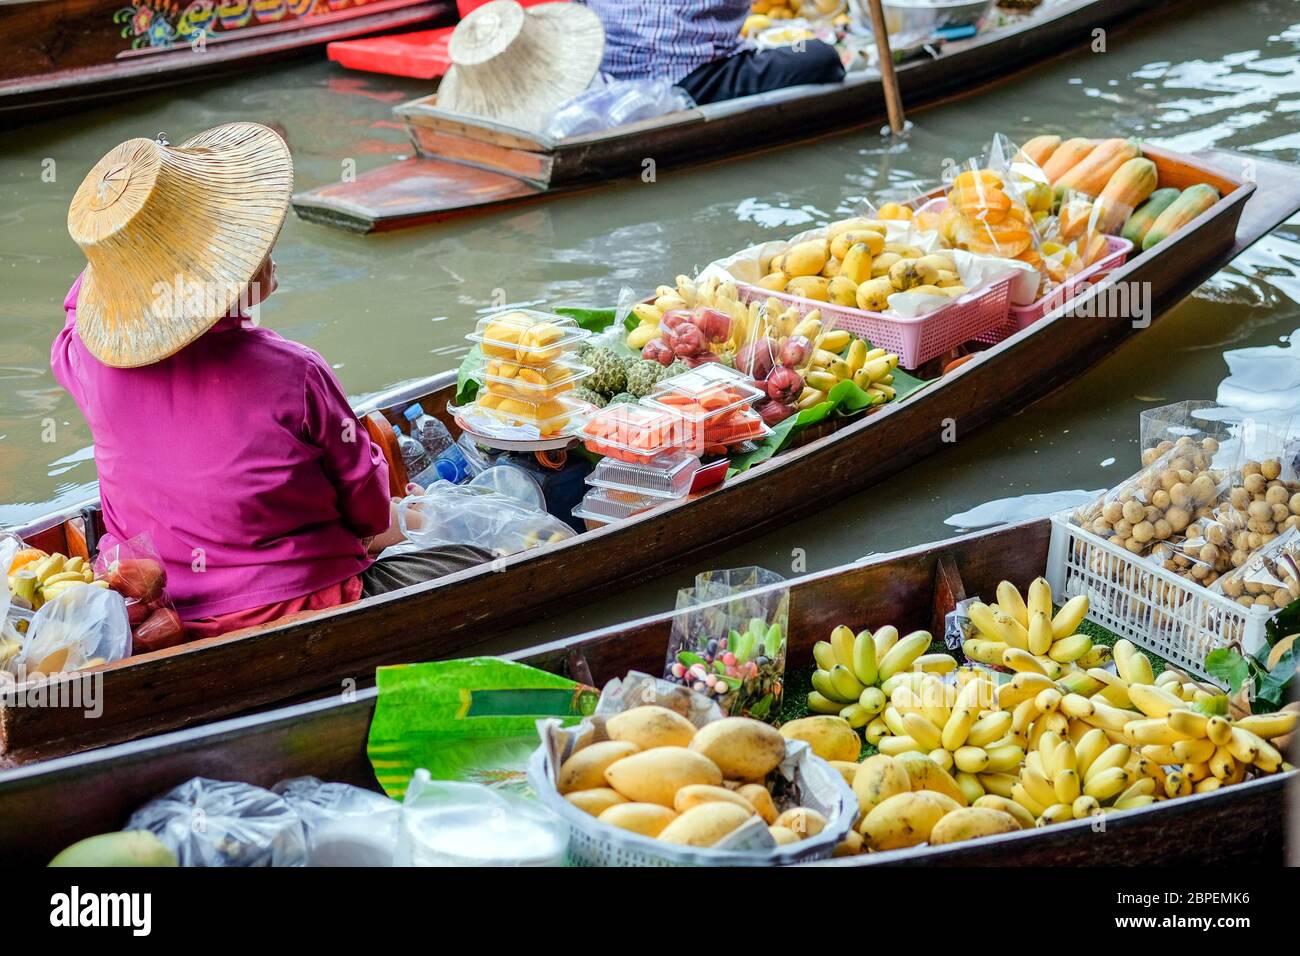 Ratchaburi-Thailand JUL 21 2018: Damnoen Saduak floating market, Ratchaburi Province, Thailand Stock Photo